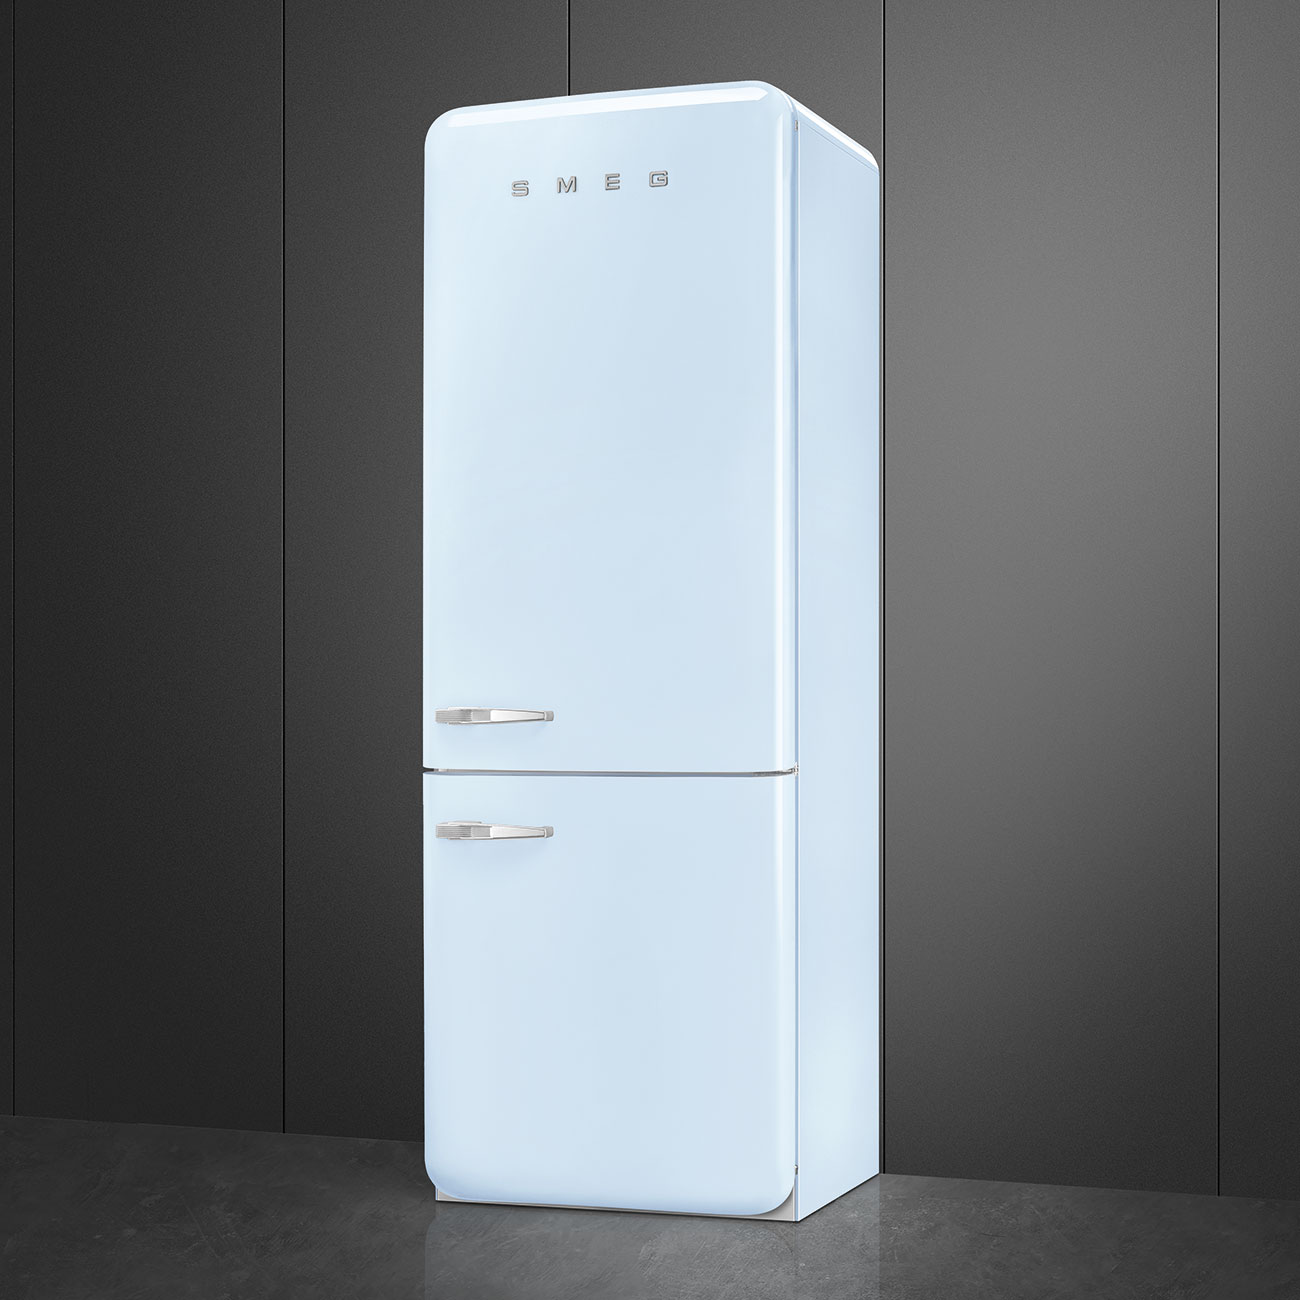 Pastel blue refrigerator - Smeg_4